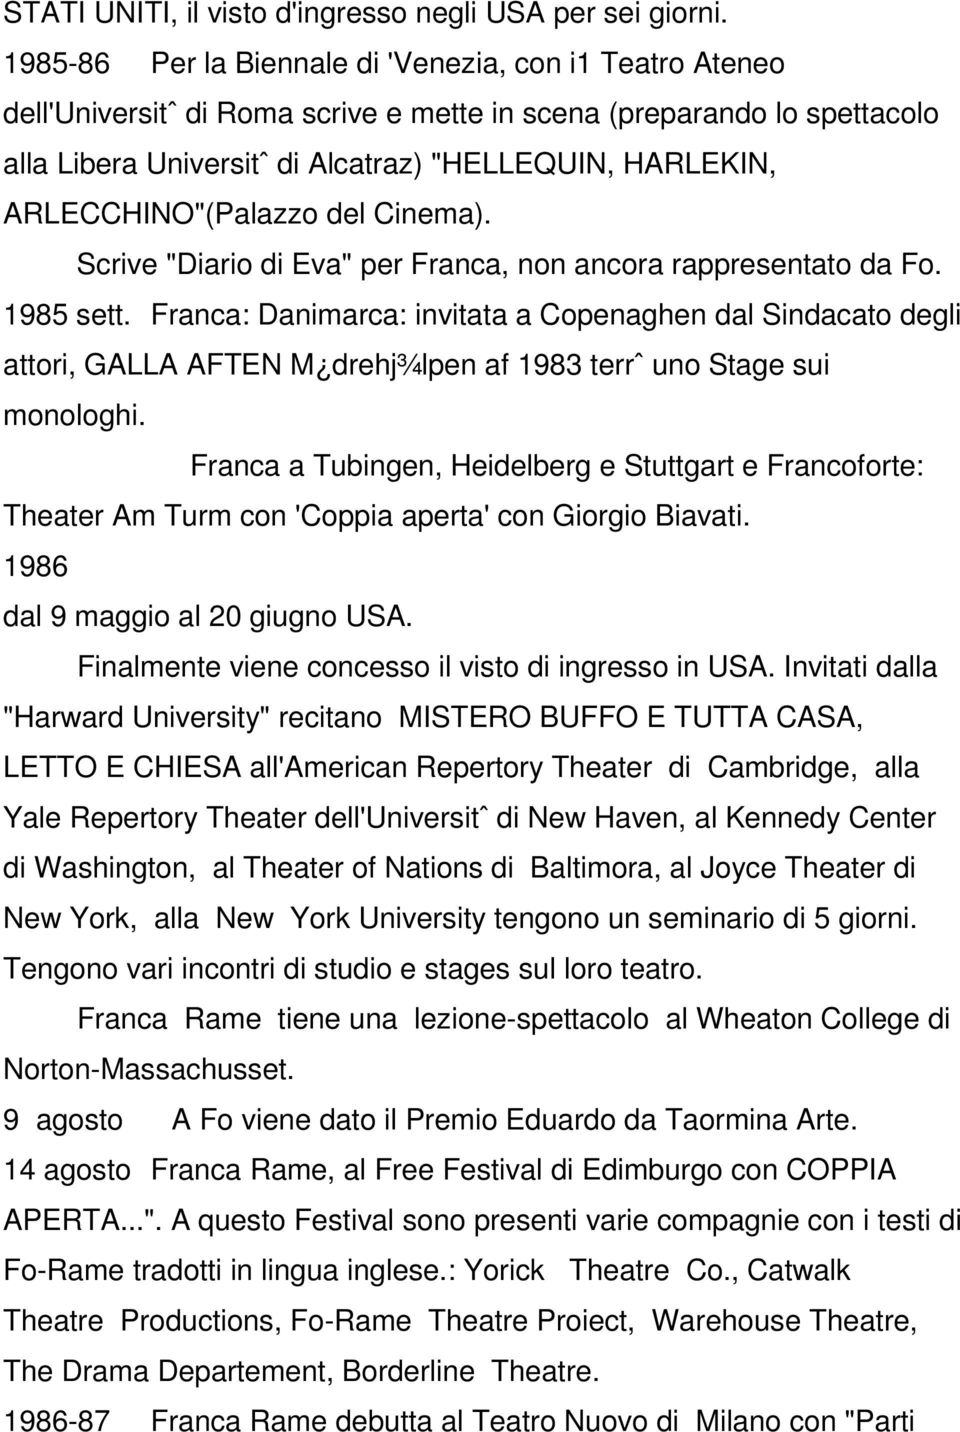 ARLECCHINO"(Palazzo del Cinema). Scrive "Diario di Eva" per Franca, non ancora rappresentato da Fo. 1985 sett.